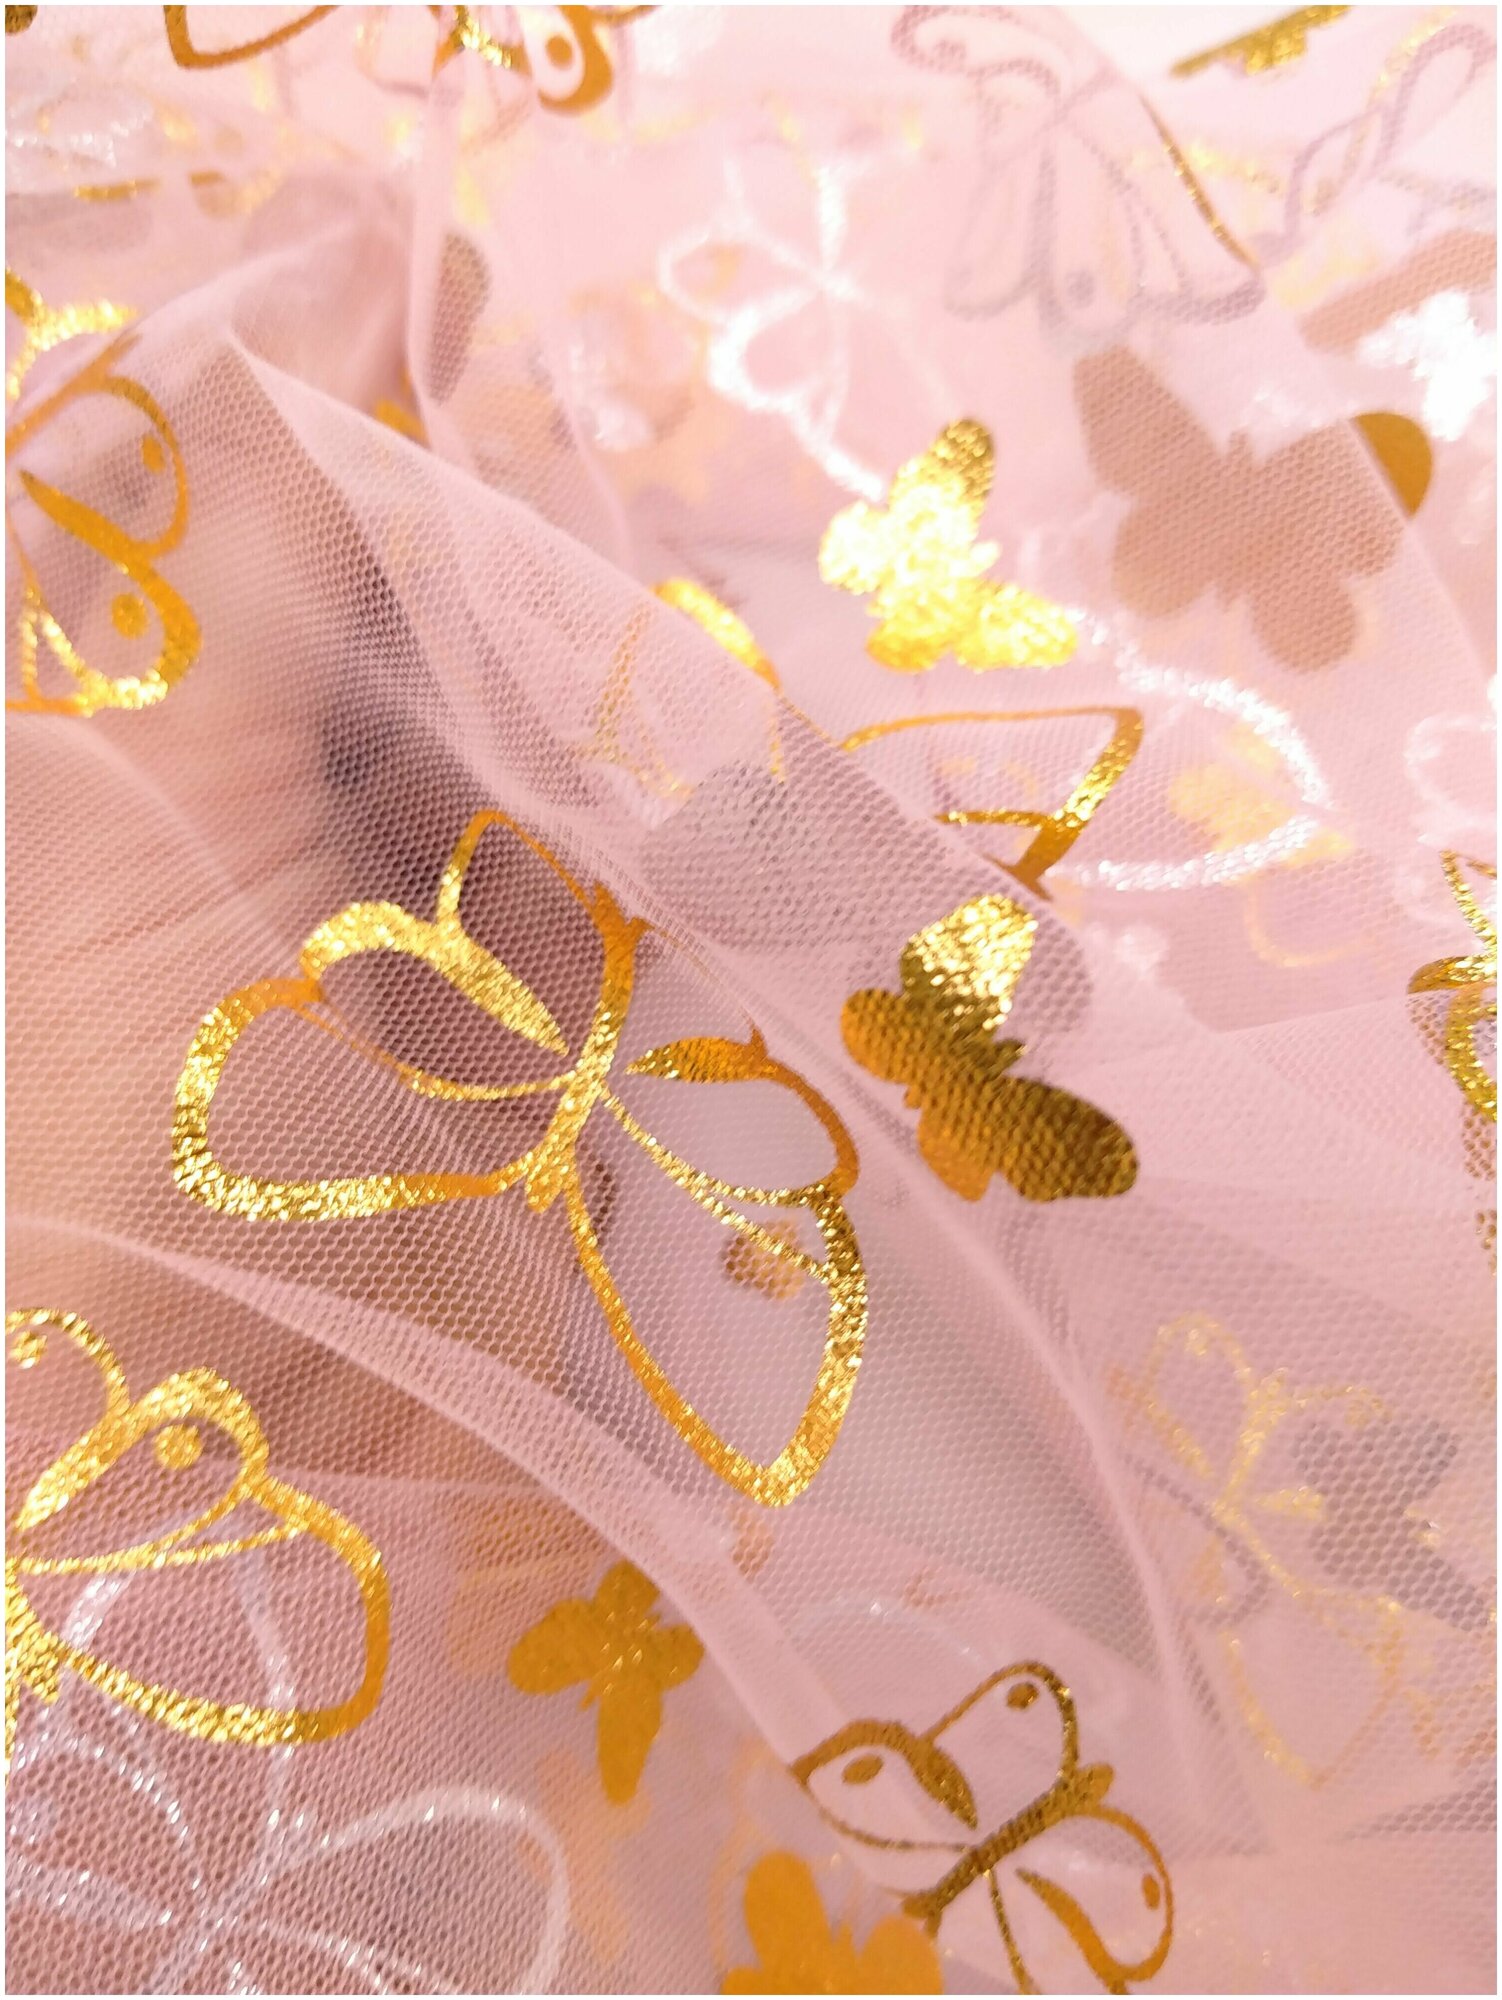 Ткань Фатин цвет Розовый с фольгированными золотыми бабочками длина 100 см. и ширина 150 см воздушная и легкая